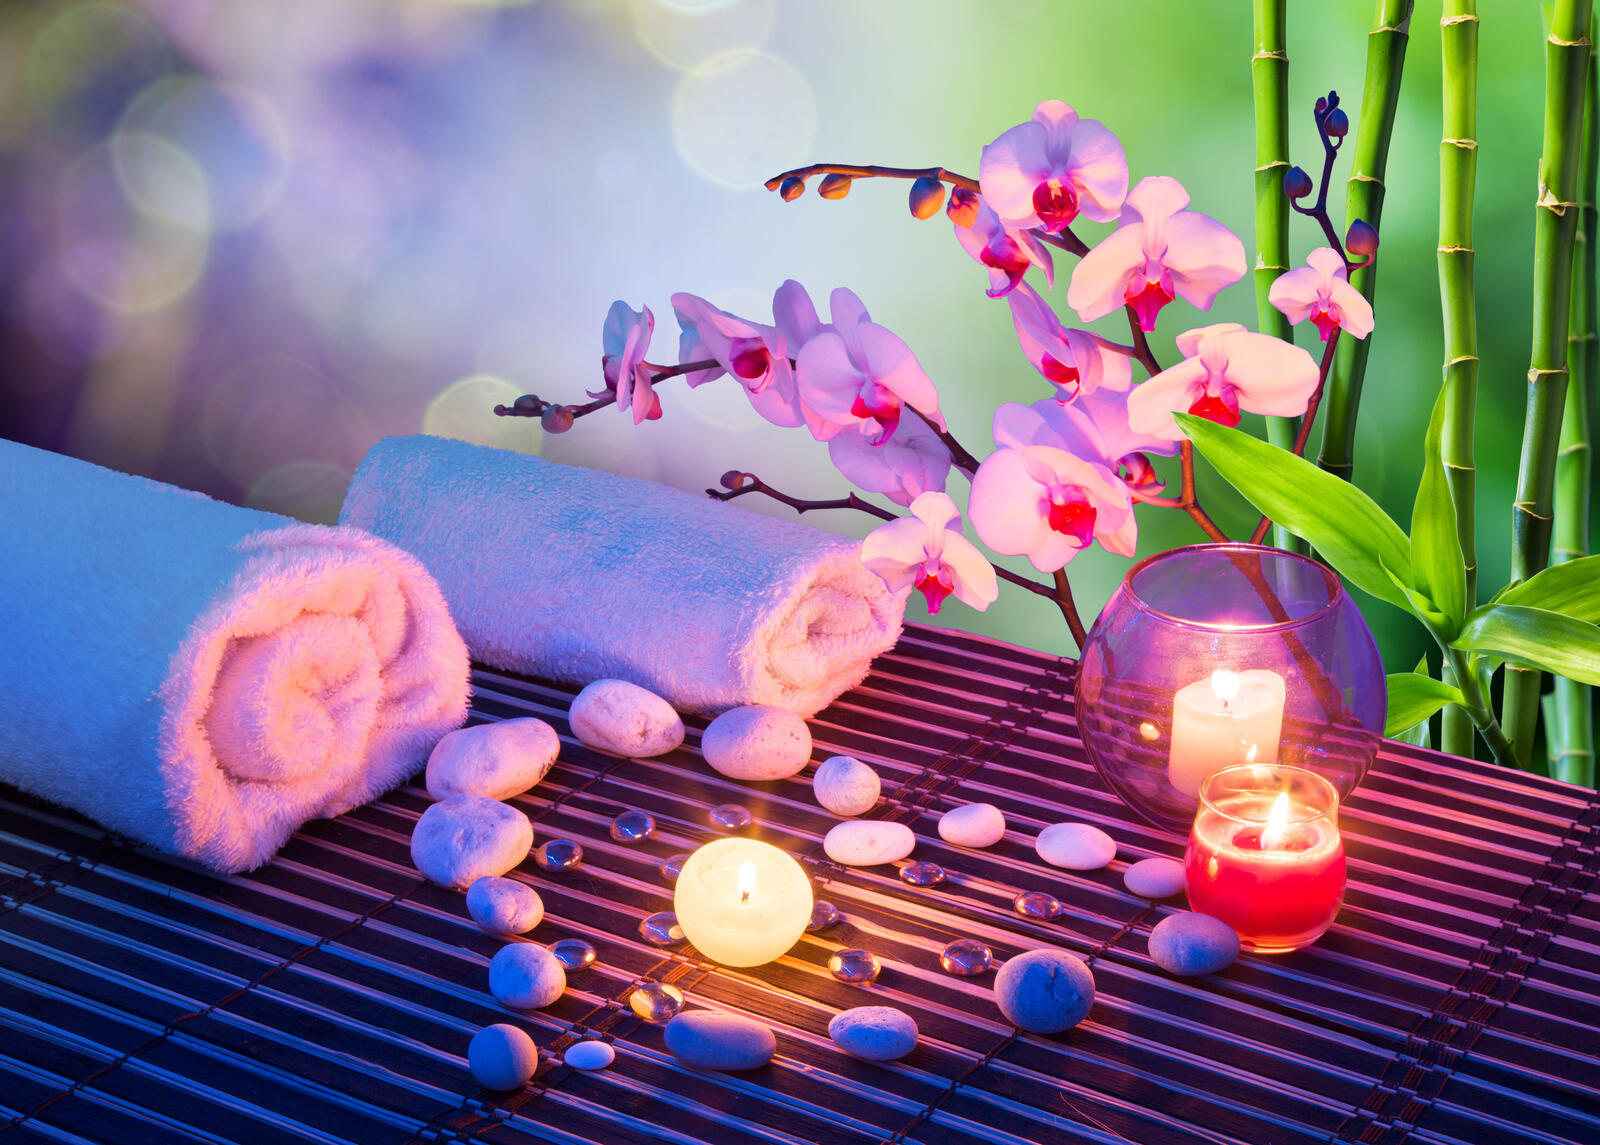 Обои массаж сердца со свечами орхидеями полотенцами и бамбуком на рабочий стол